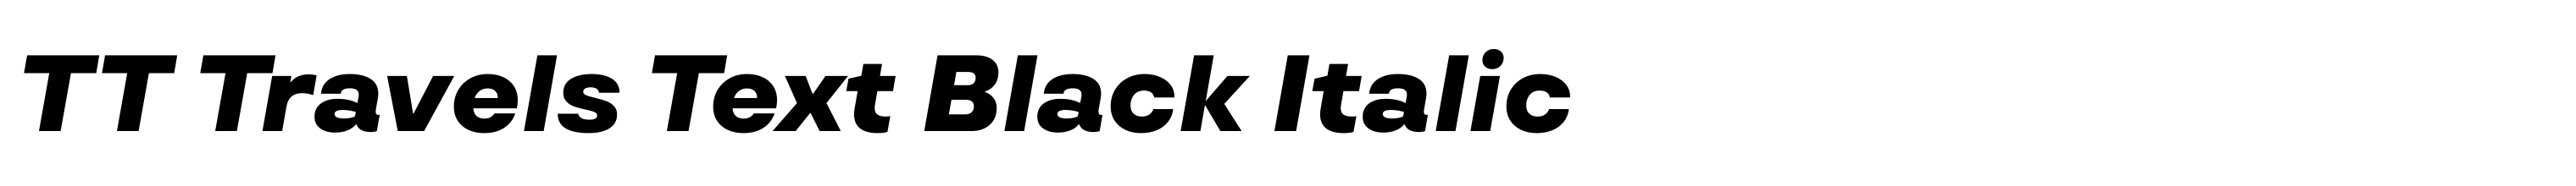 TT Travels Text Black Italic